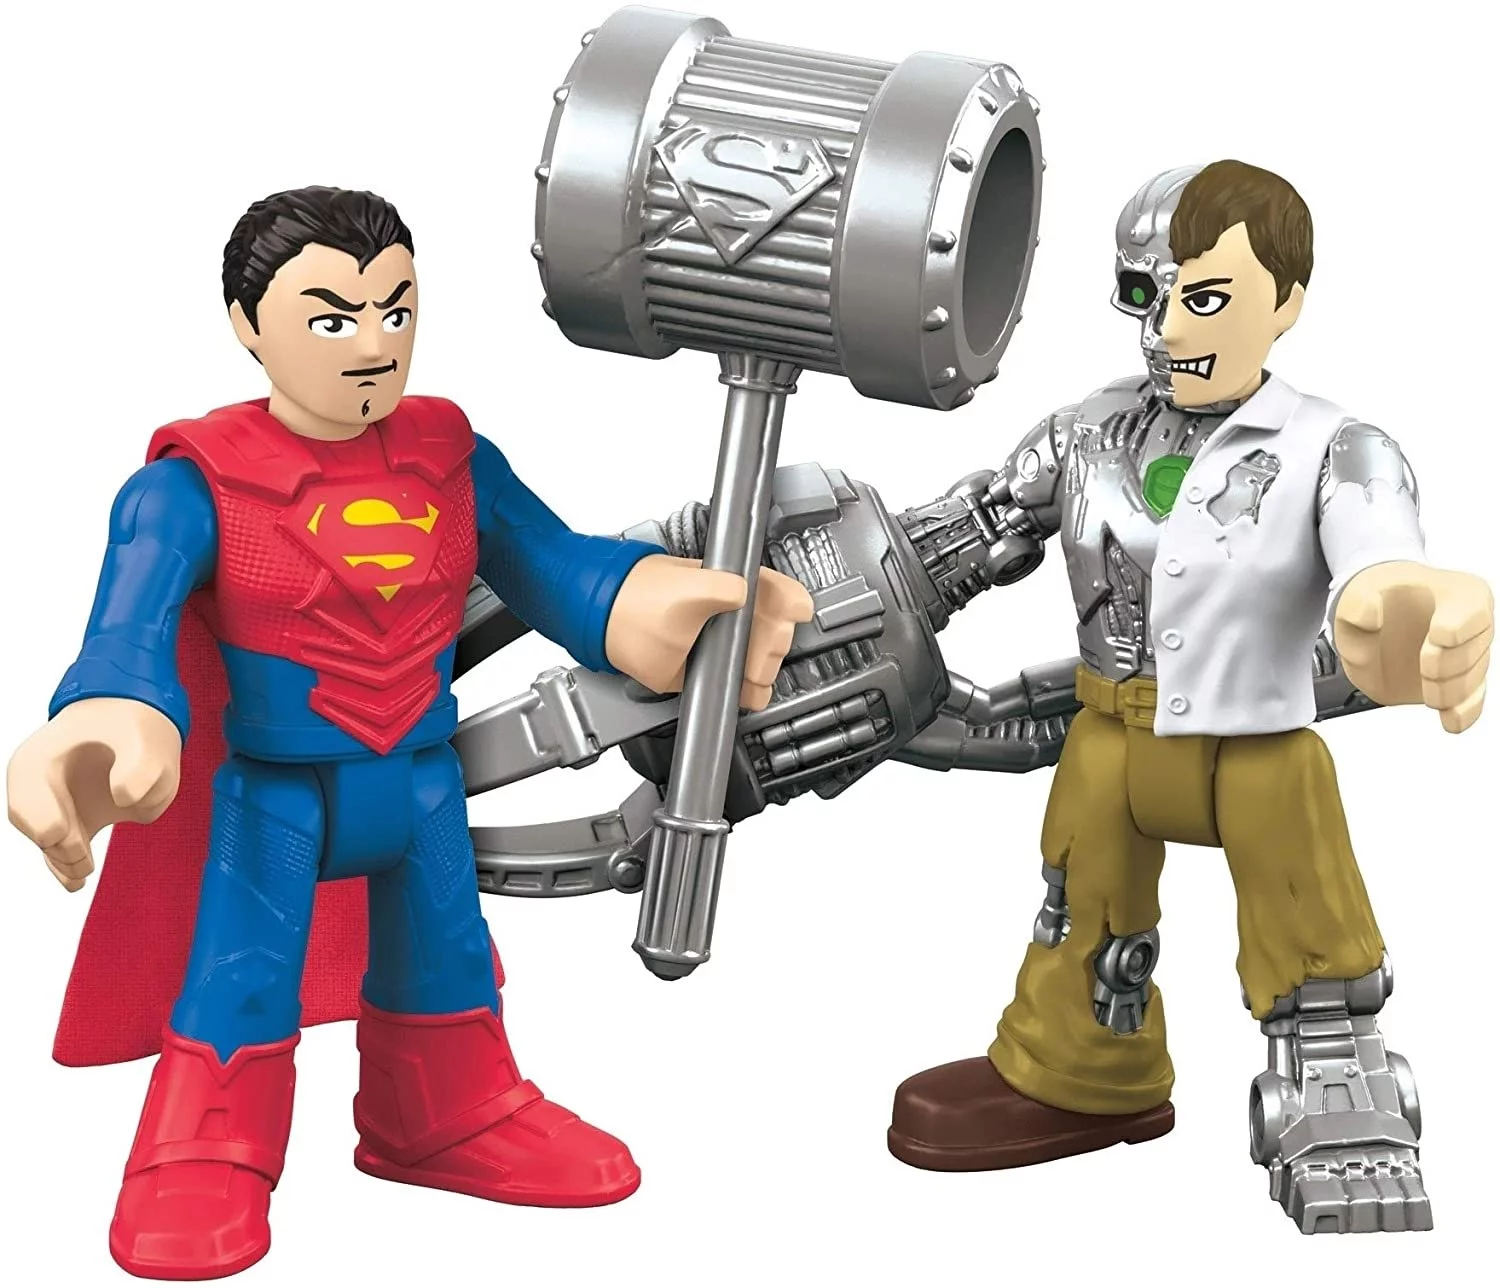 Imaginext DC Super Friends Superman and Metallo Action Figure Set (3.15")